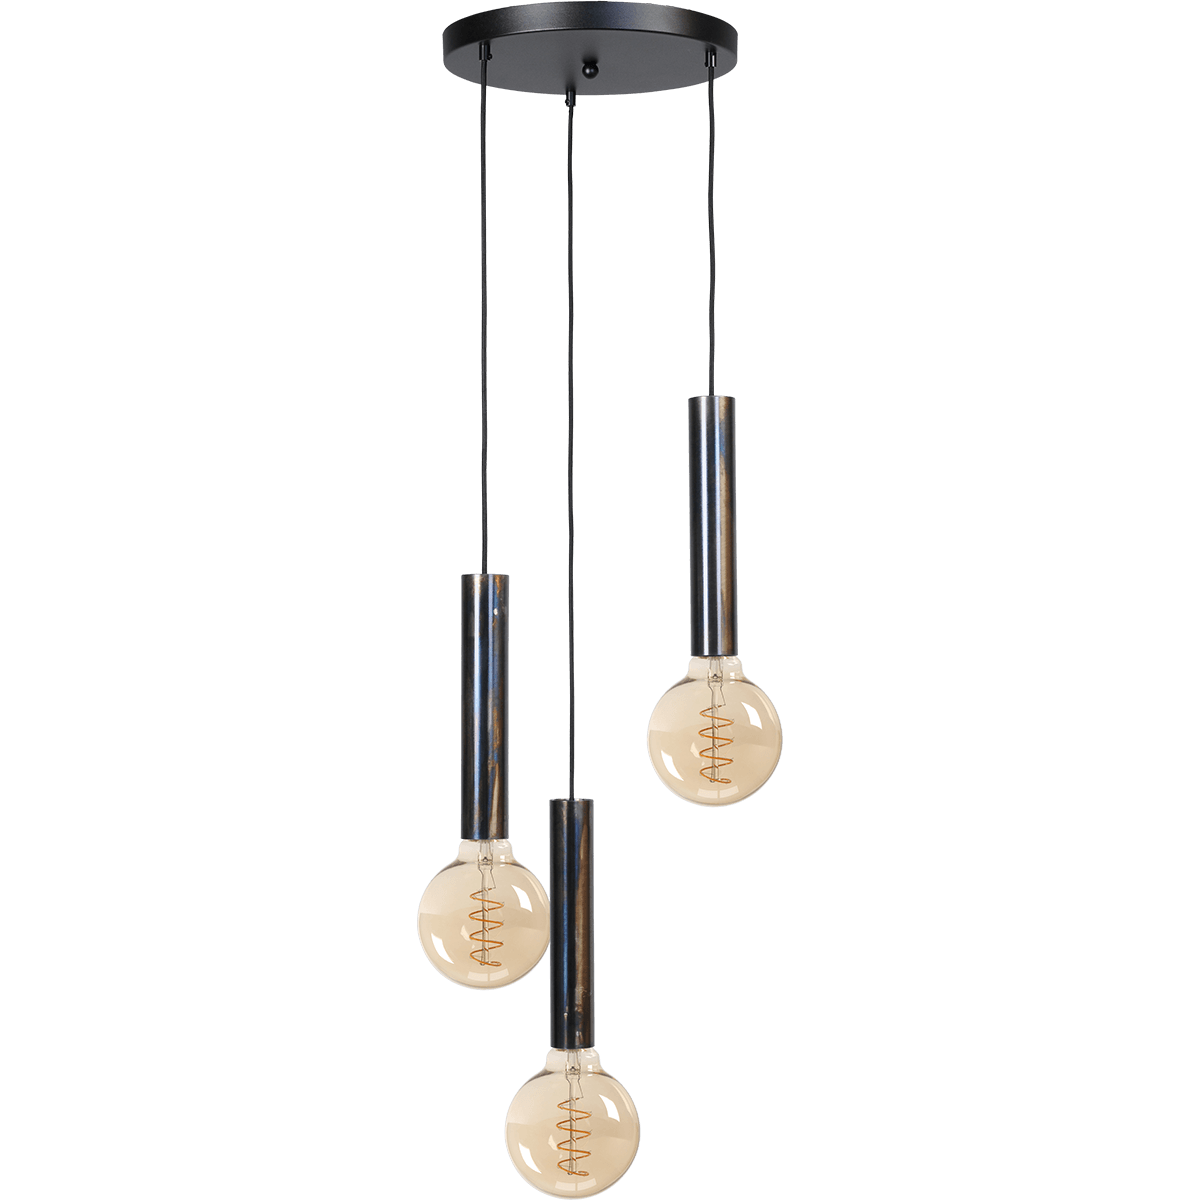 Hanglamp Tomasso 3-lichts dappled oil - basis zwart Ø35cm - zwarte stoffen kabel 150cm - MASTERLIGHT